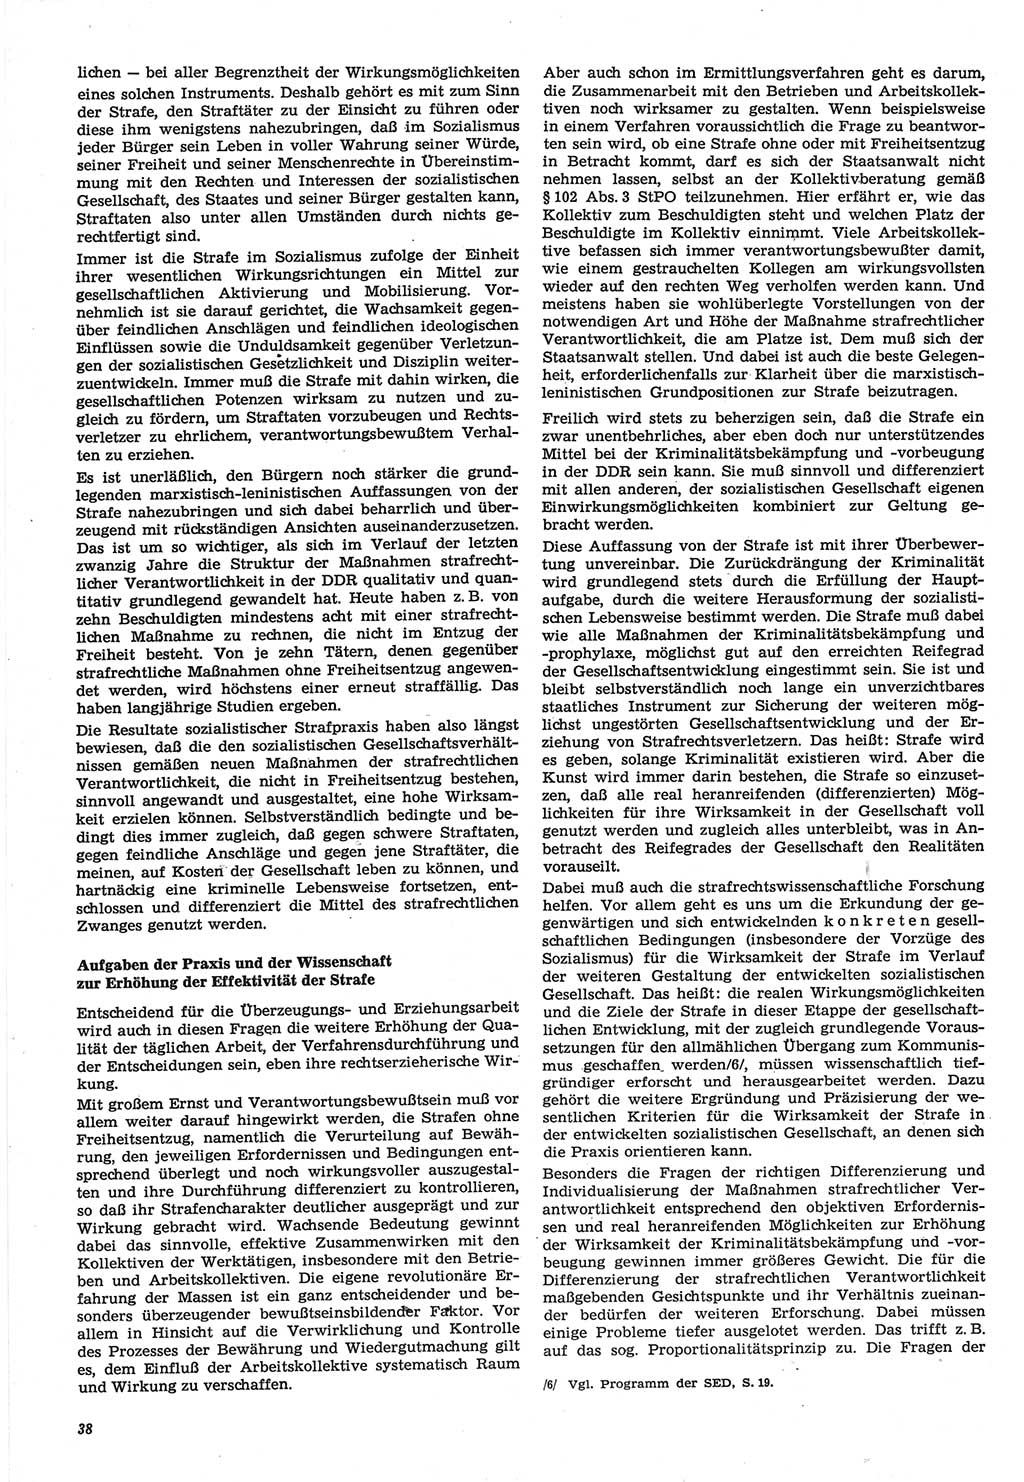 Neue Justiz (NJ), Zeitschrift für Recht und Rechtswissenschaft-Zeitschrift, sozialistisches Recht und Gesetzlichkeit, 31. Jahrgang 1977, Seite 38 (NJ DDR 1977, S. 38)